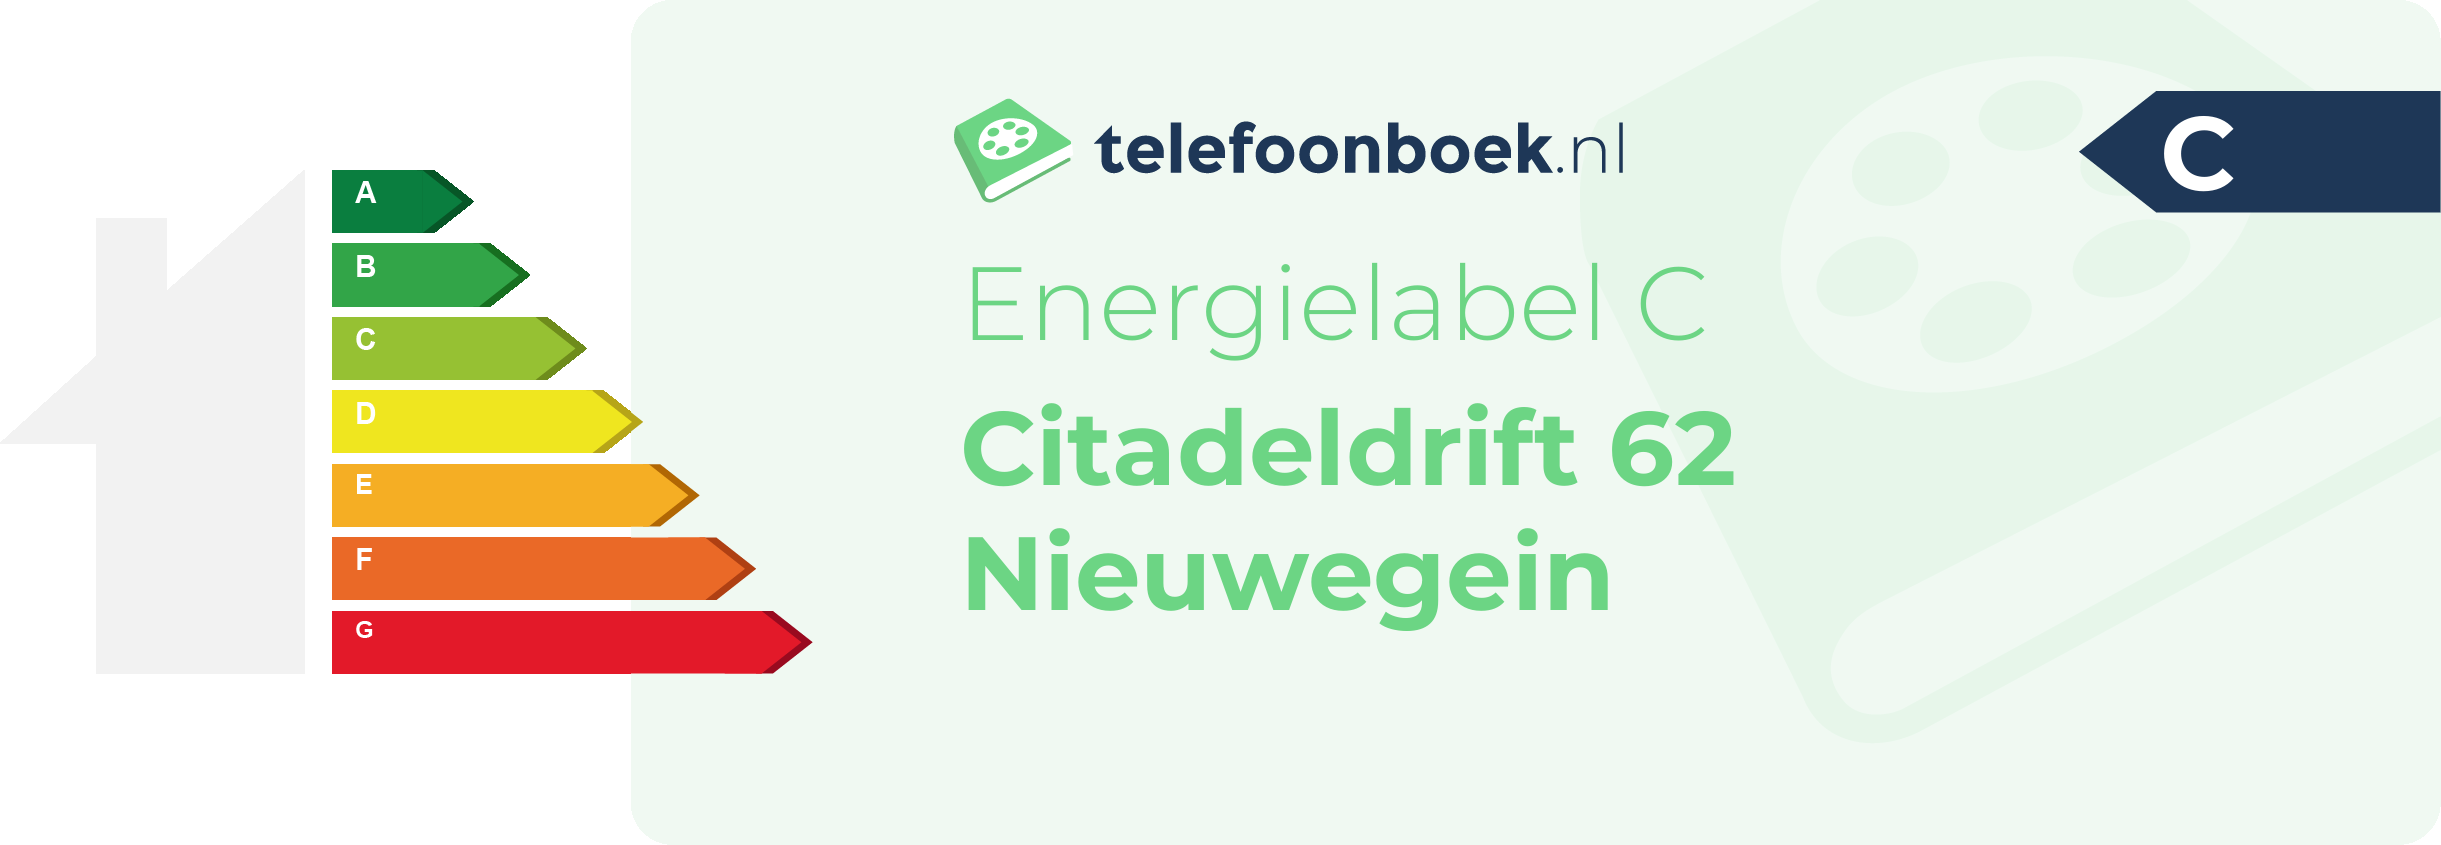 Energielabel Citadeldrift 62 Nieuwegein